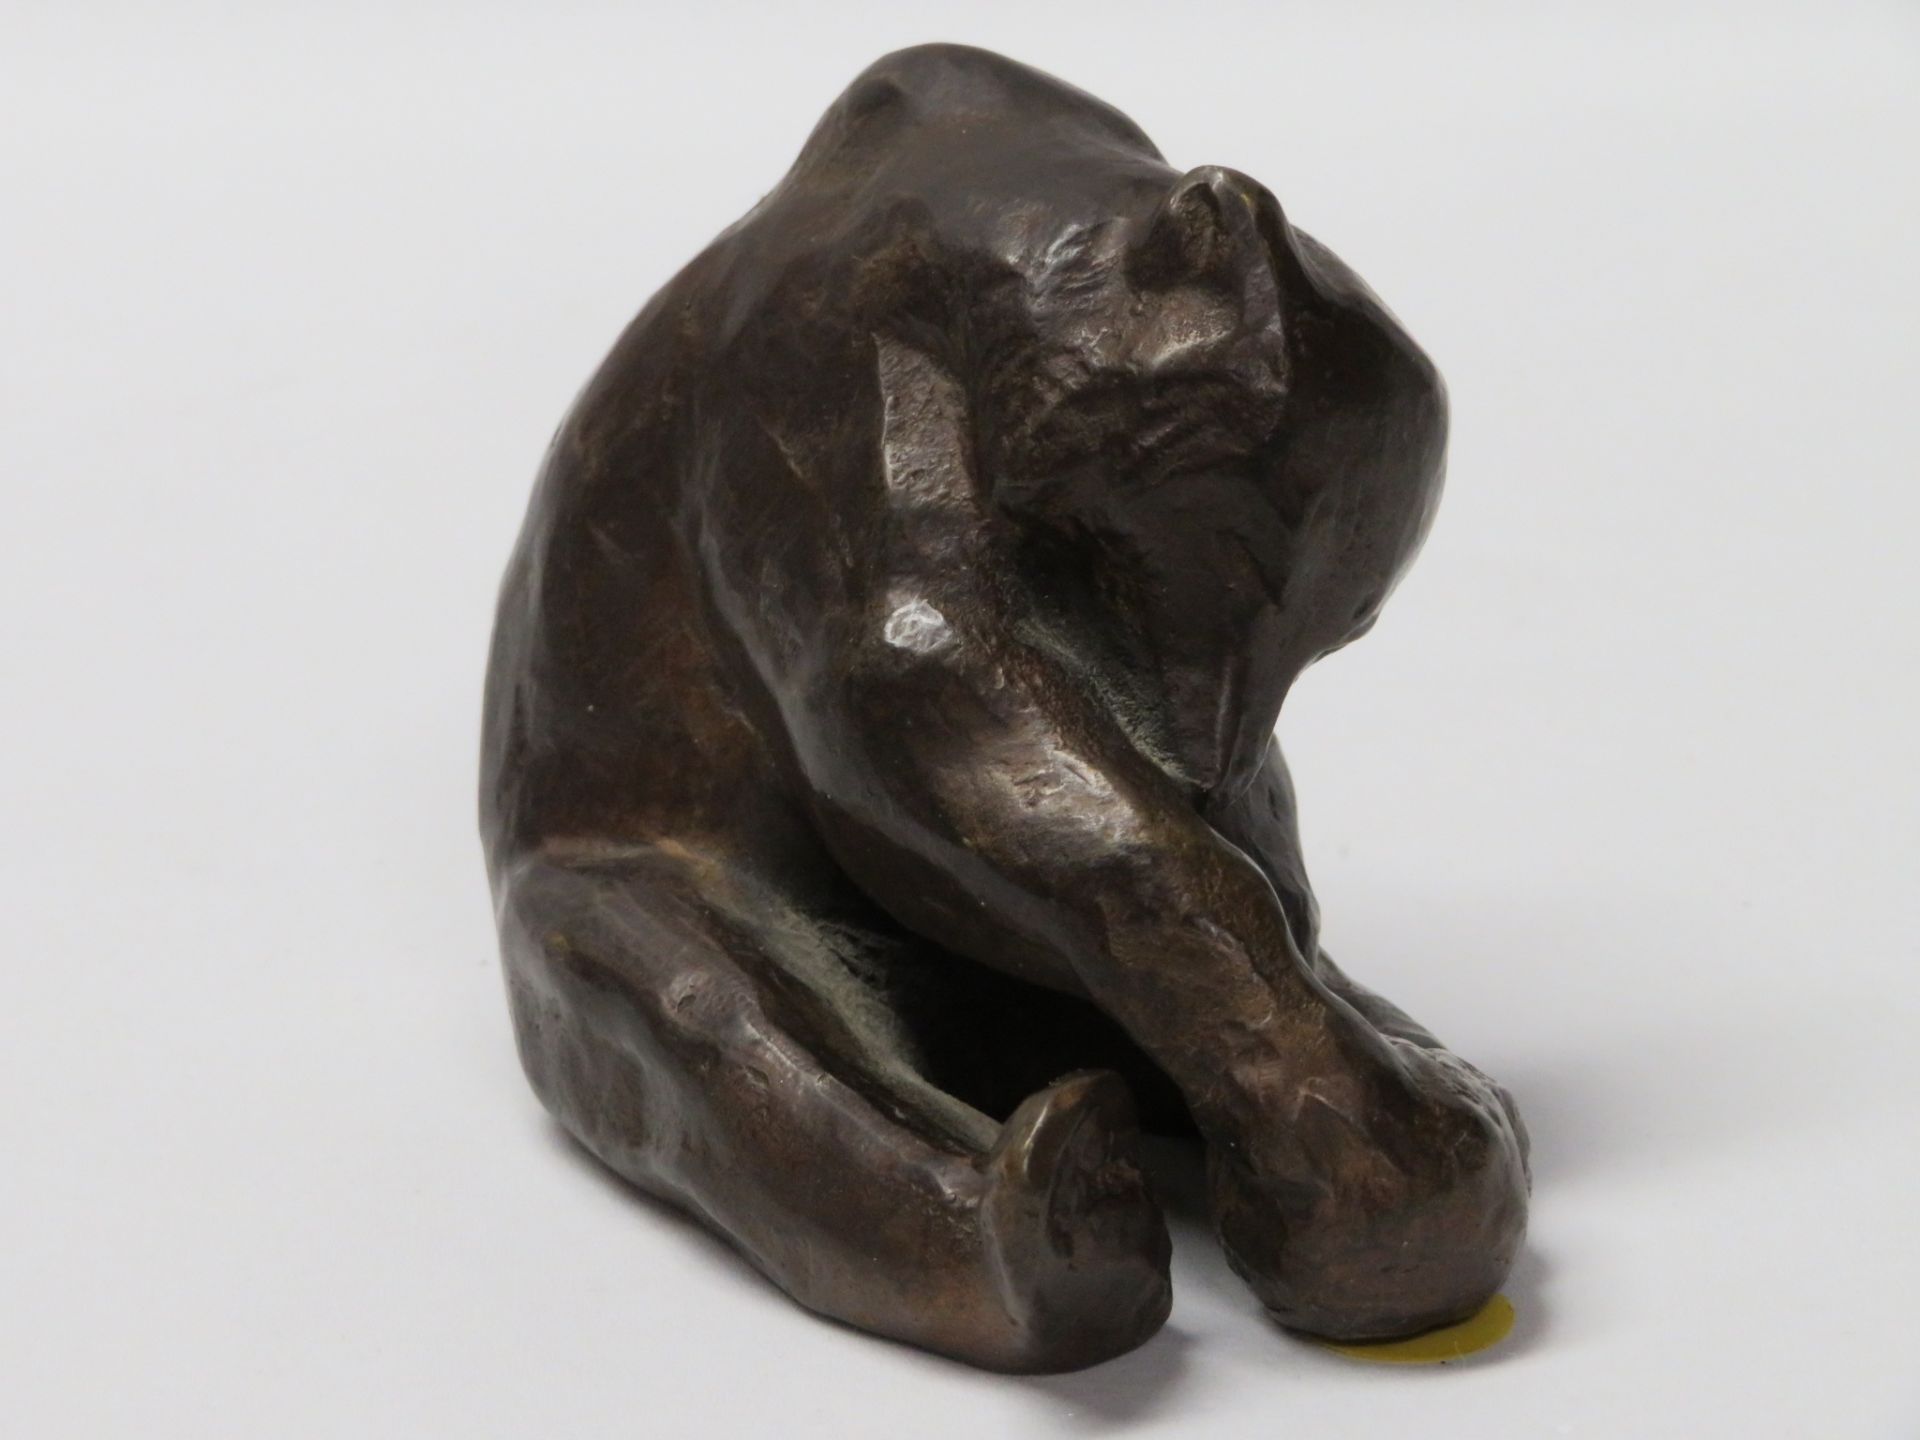 Unbekannt, Deutsch, 1. Hälfte 20. Jahrhundert, Spielender Bär, Bronze, 7 x 9 x